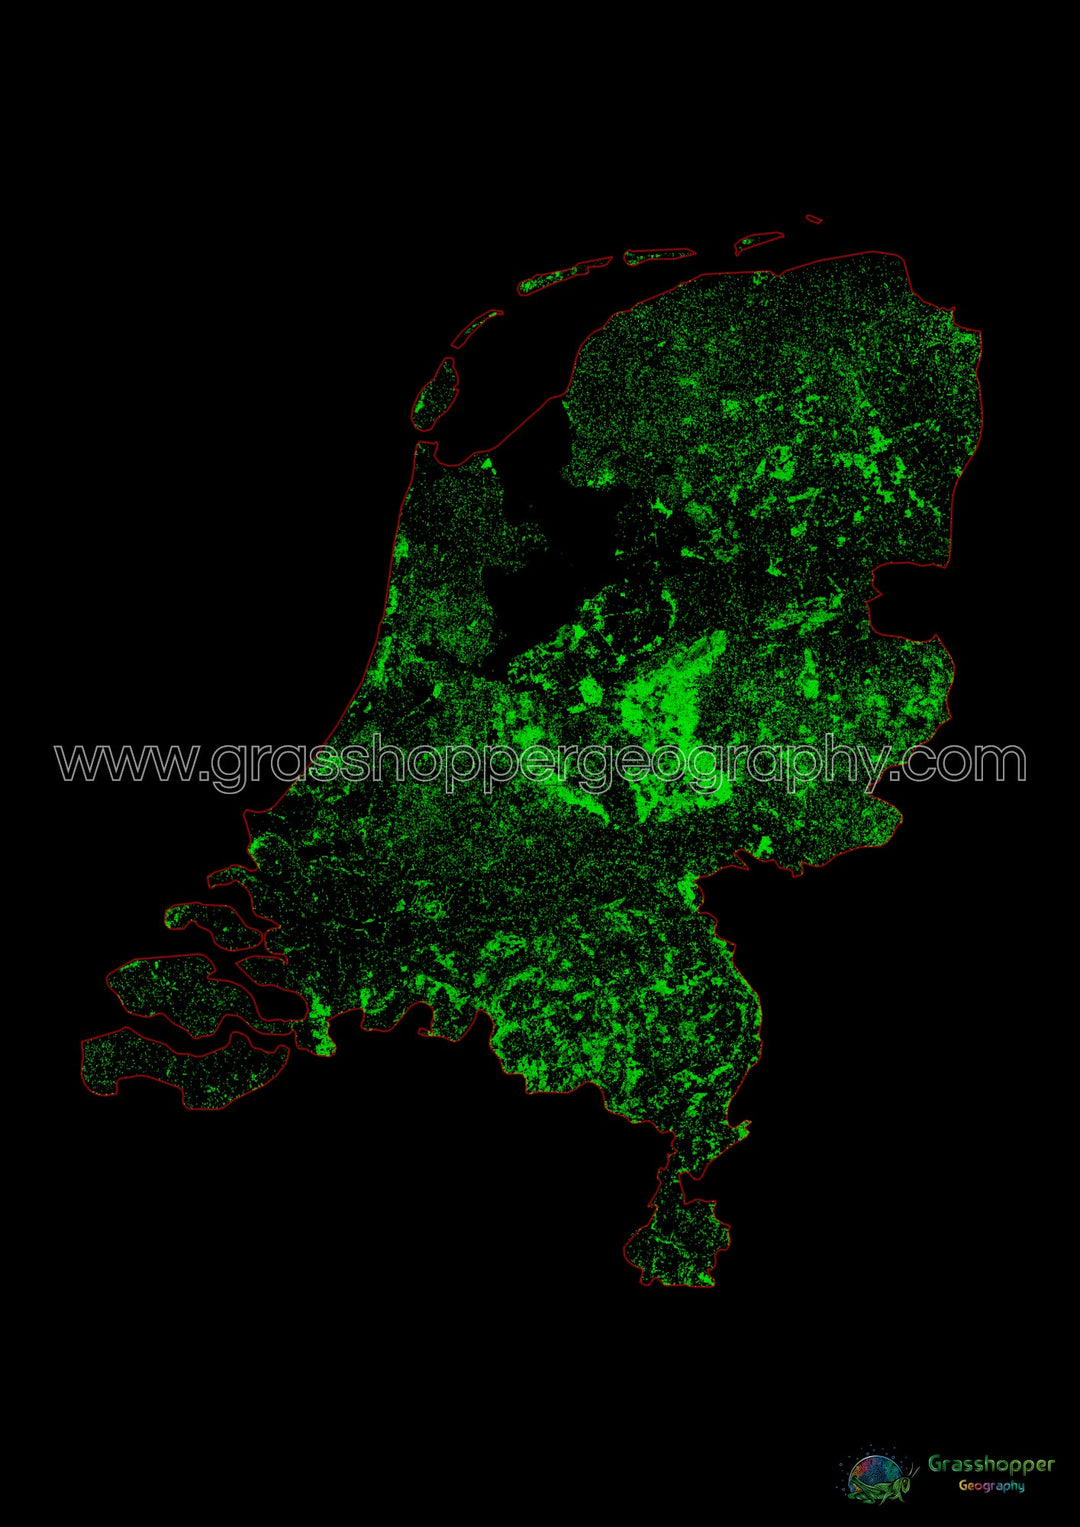 Países Bajos - Mapa de cobertura forestal - Impresión de bellas artes